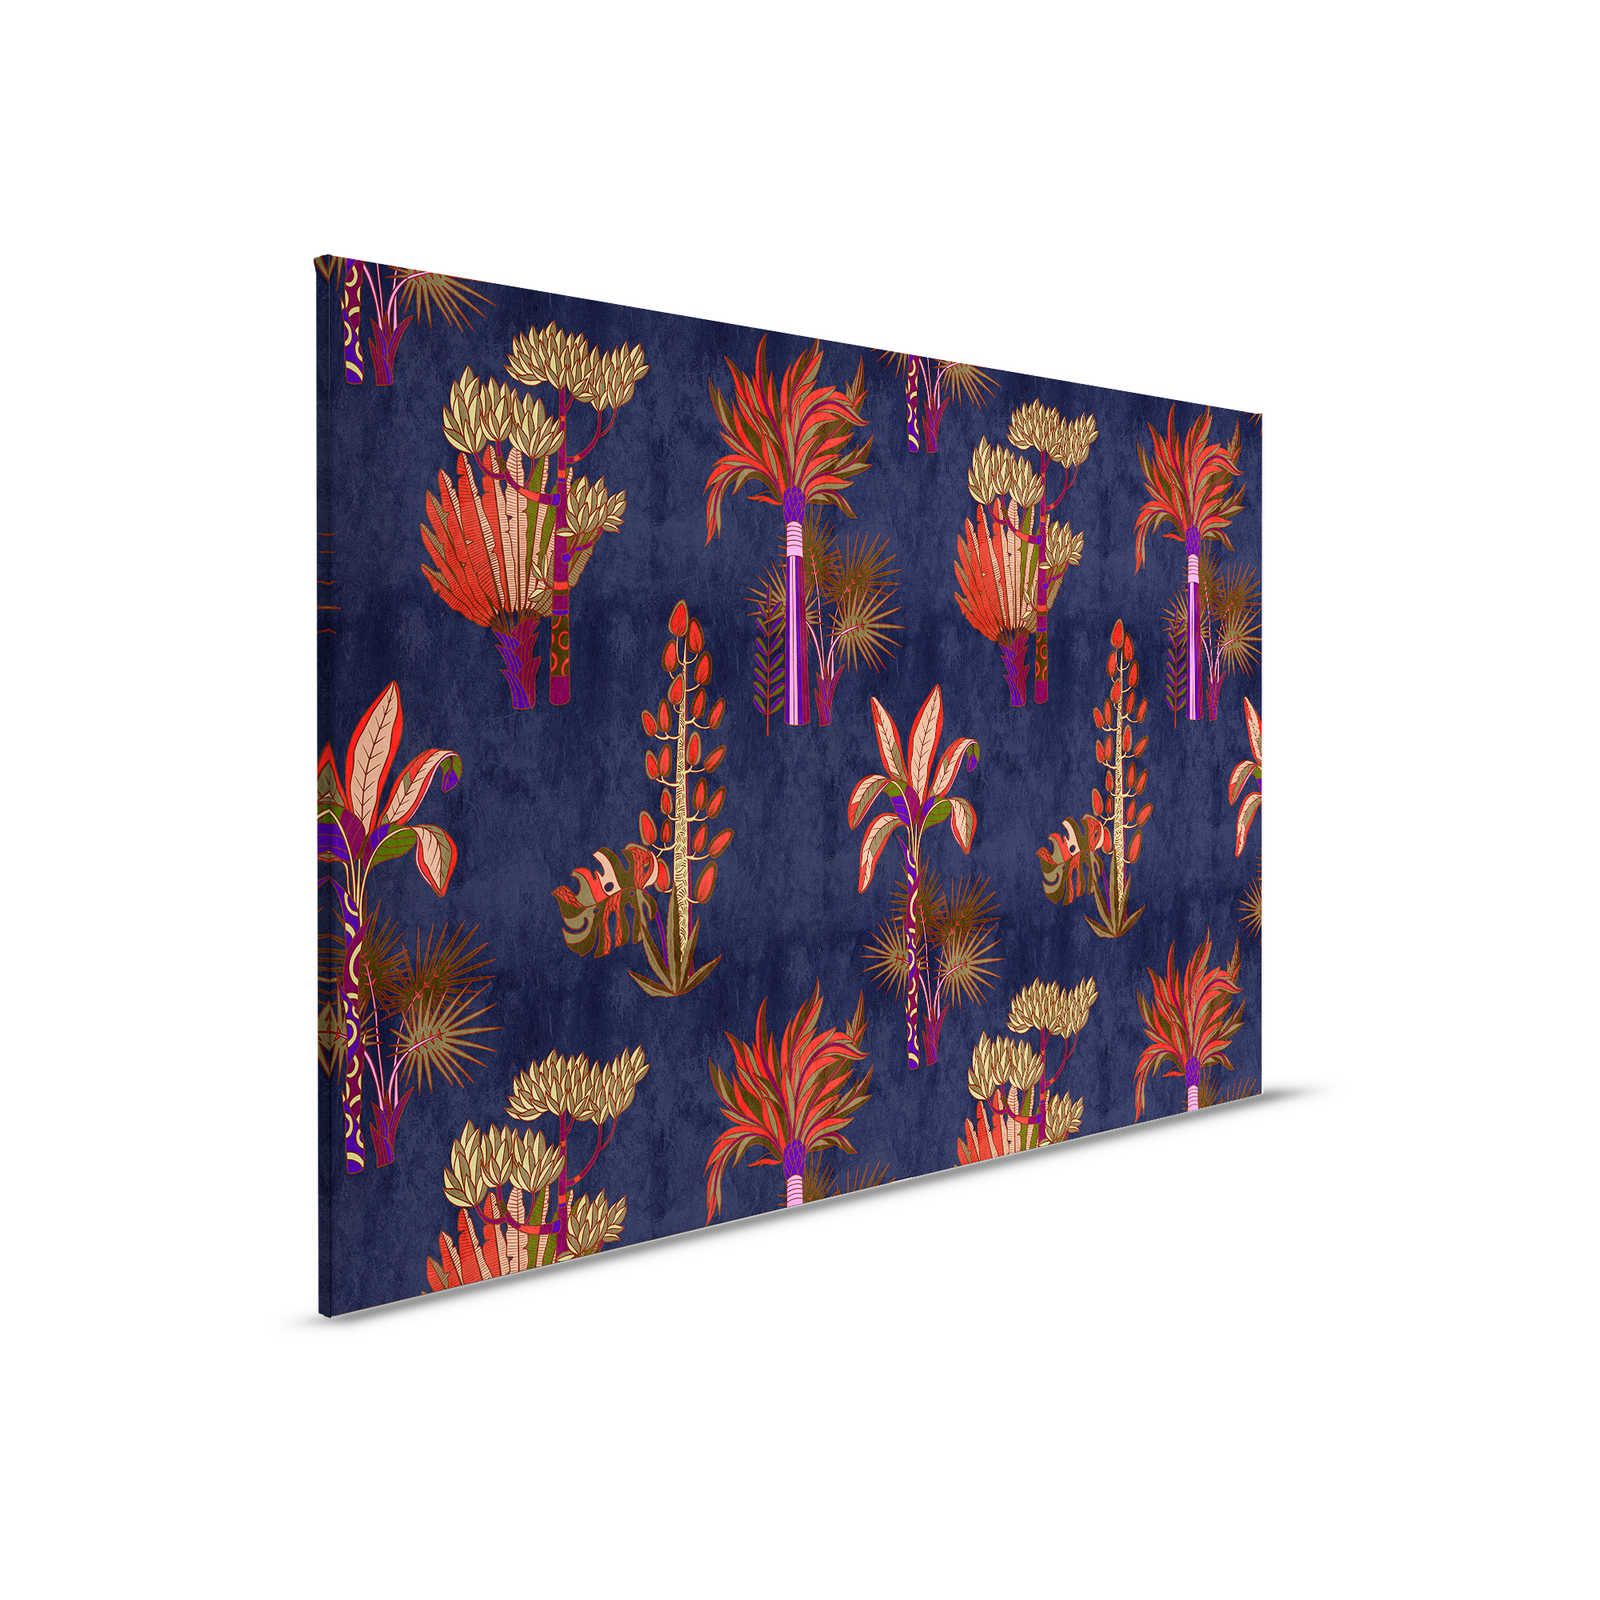 Lagos 2 - Quadro su tela di palme African Sytle in colori vivaci - 0,90 m x 0,60 m
